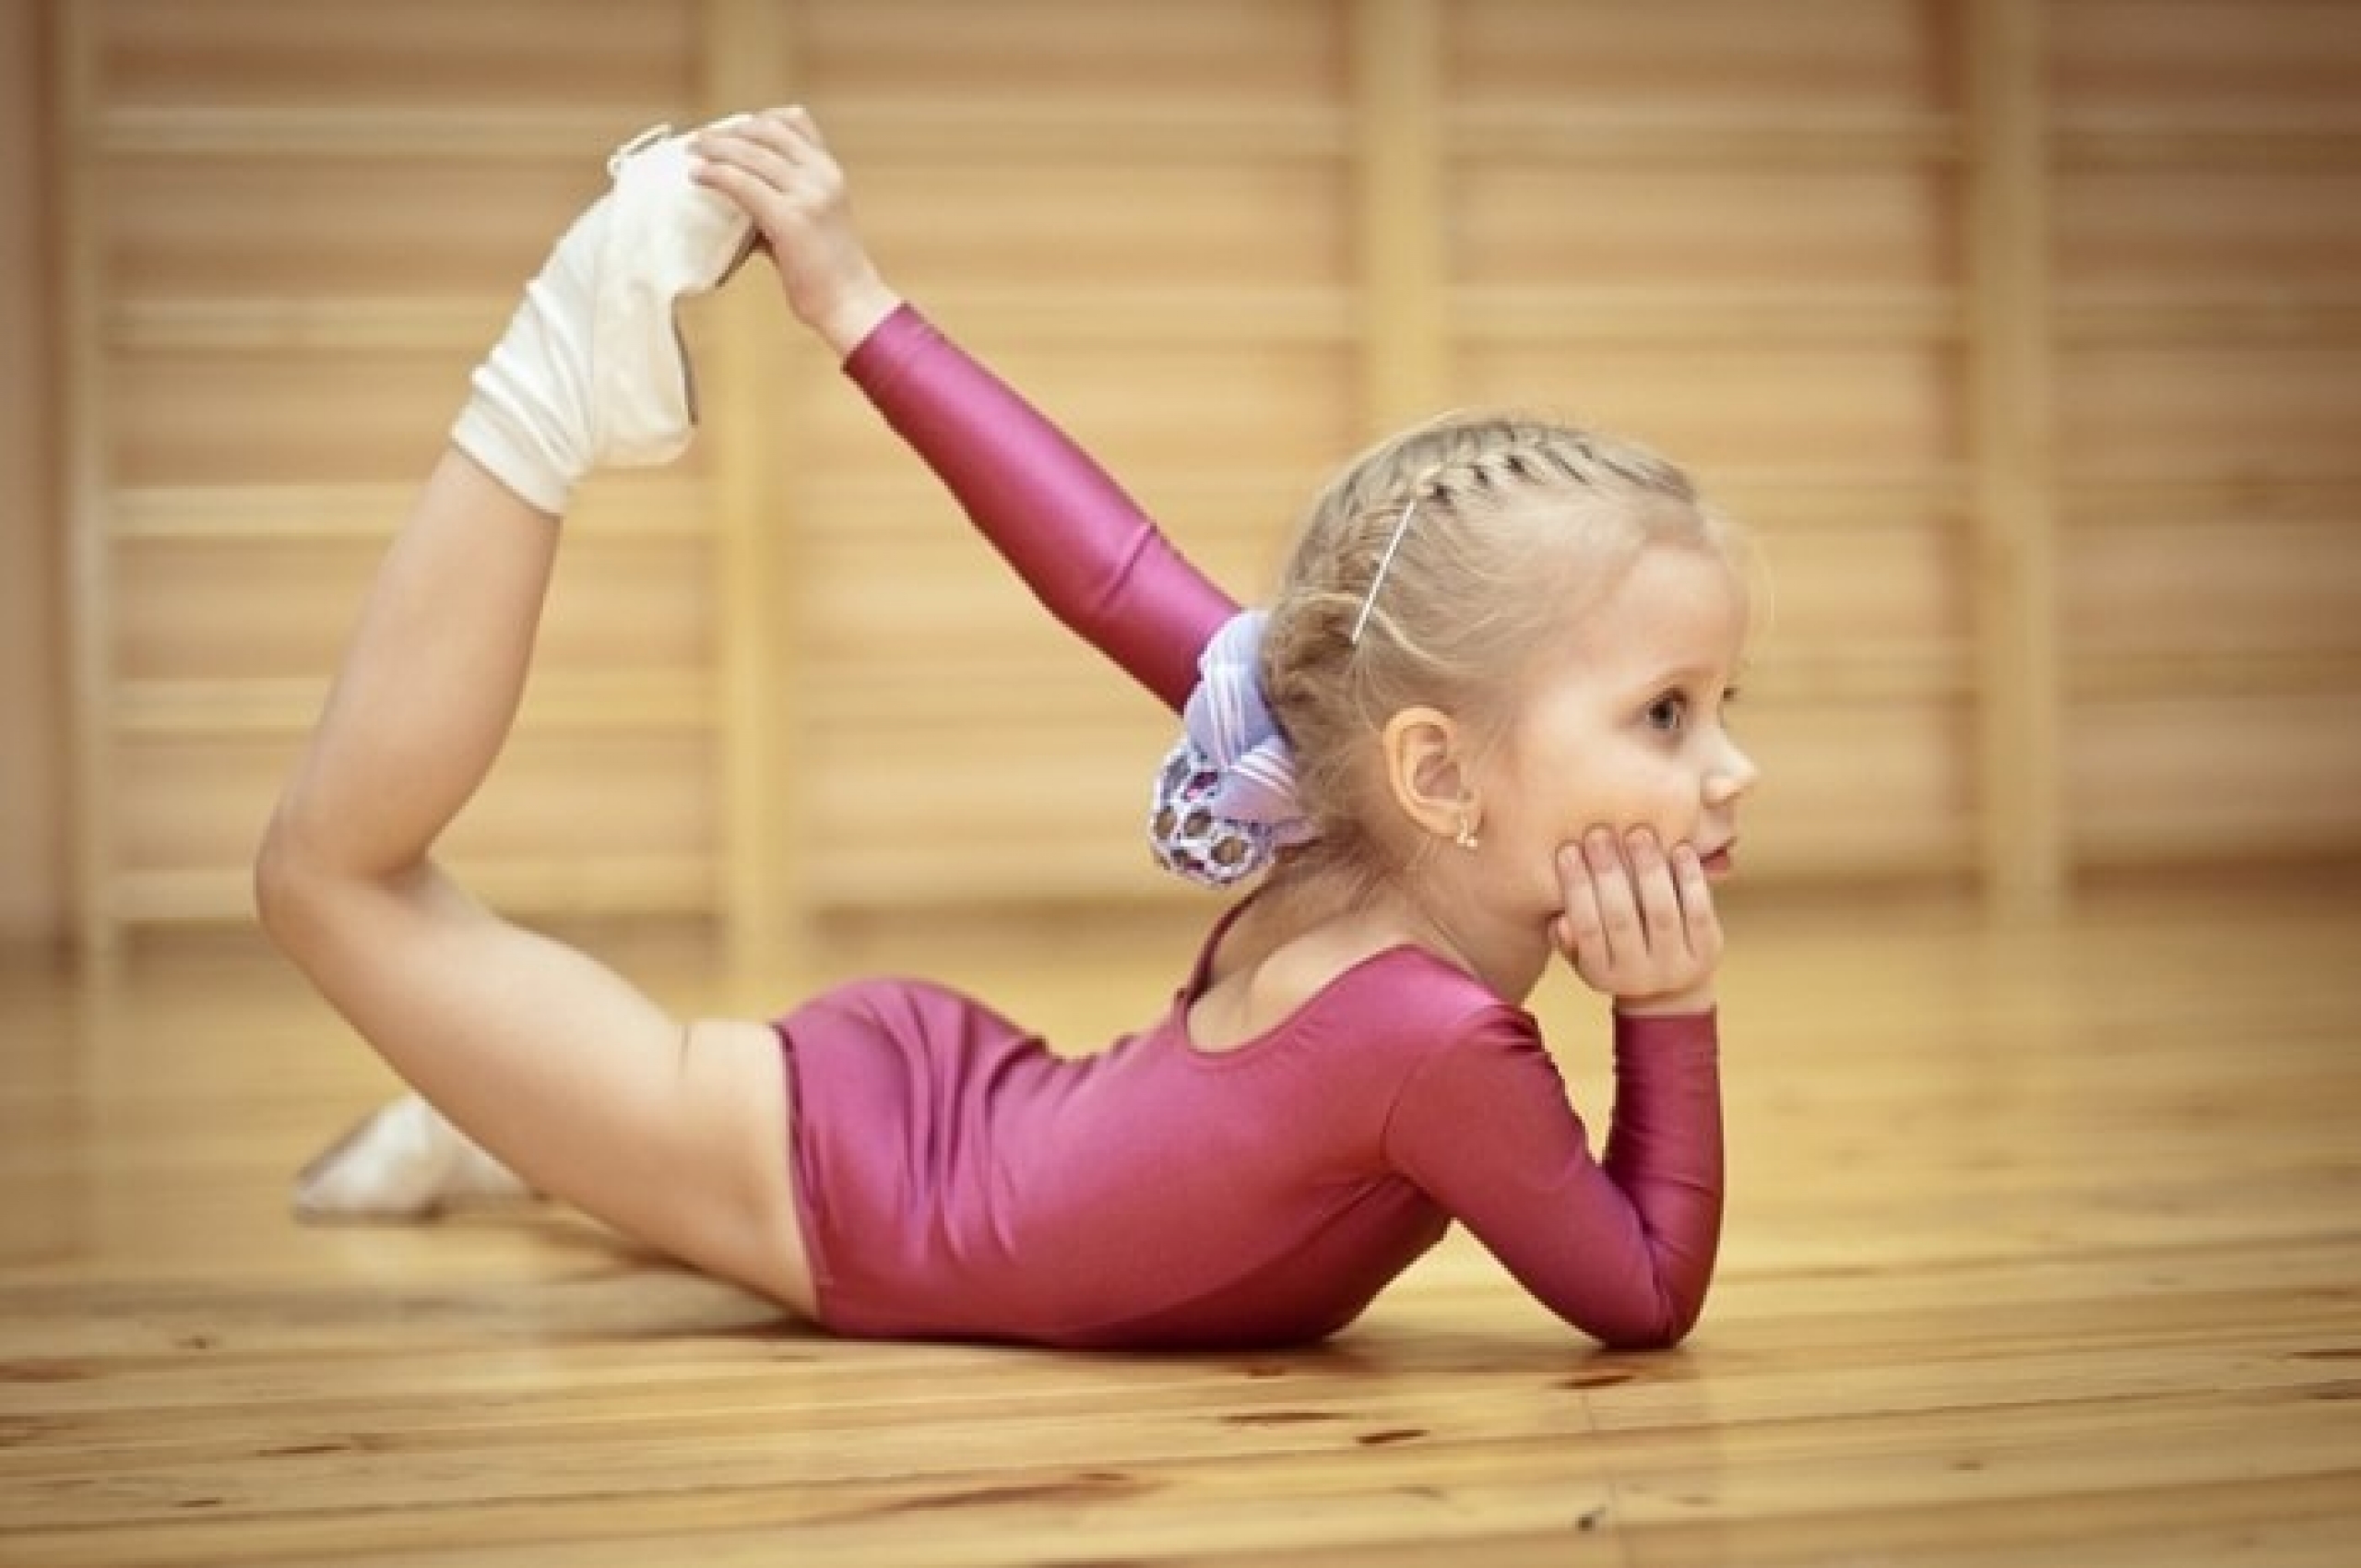 Тренировки для детей 4-5 лет: гимнастика и занятия спортом для физического развития